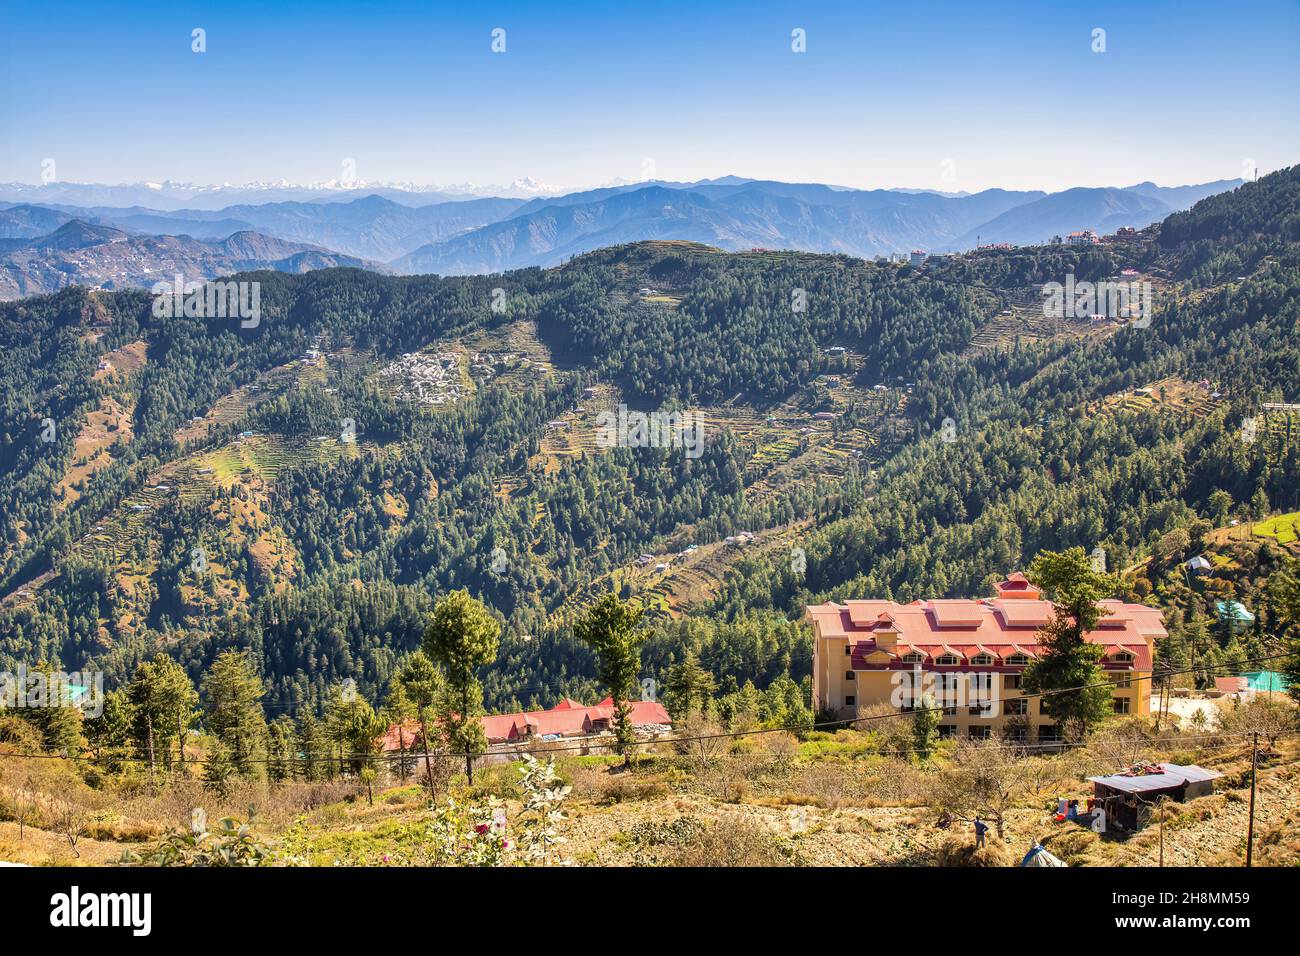 Vista aérea de la estación de la colina de Sarahan con casas de la ciudad en las laderas de la montaña con paisaje pintoresco del Himalaya en Himachal Pradesh, India Foto de stock